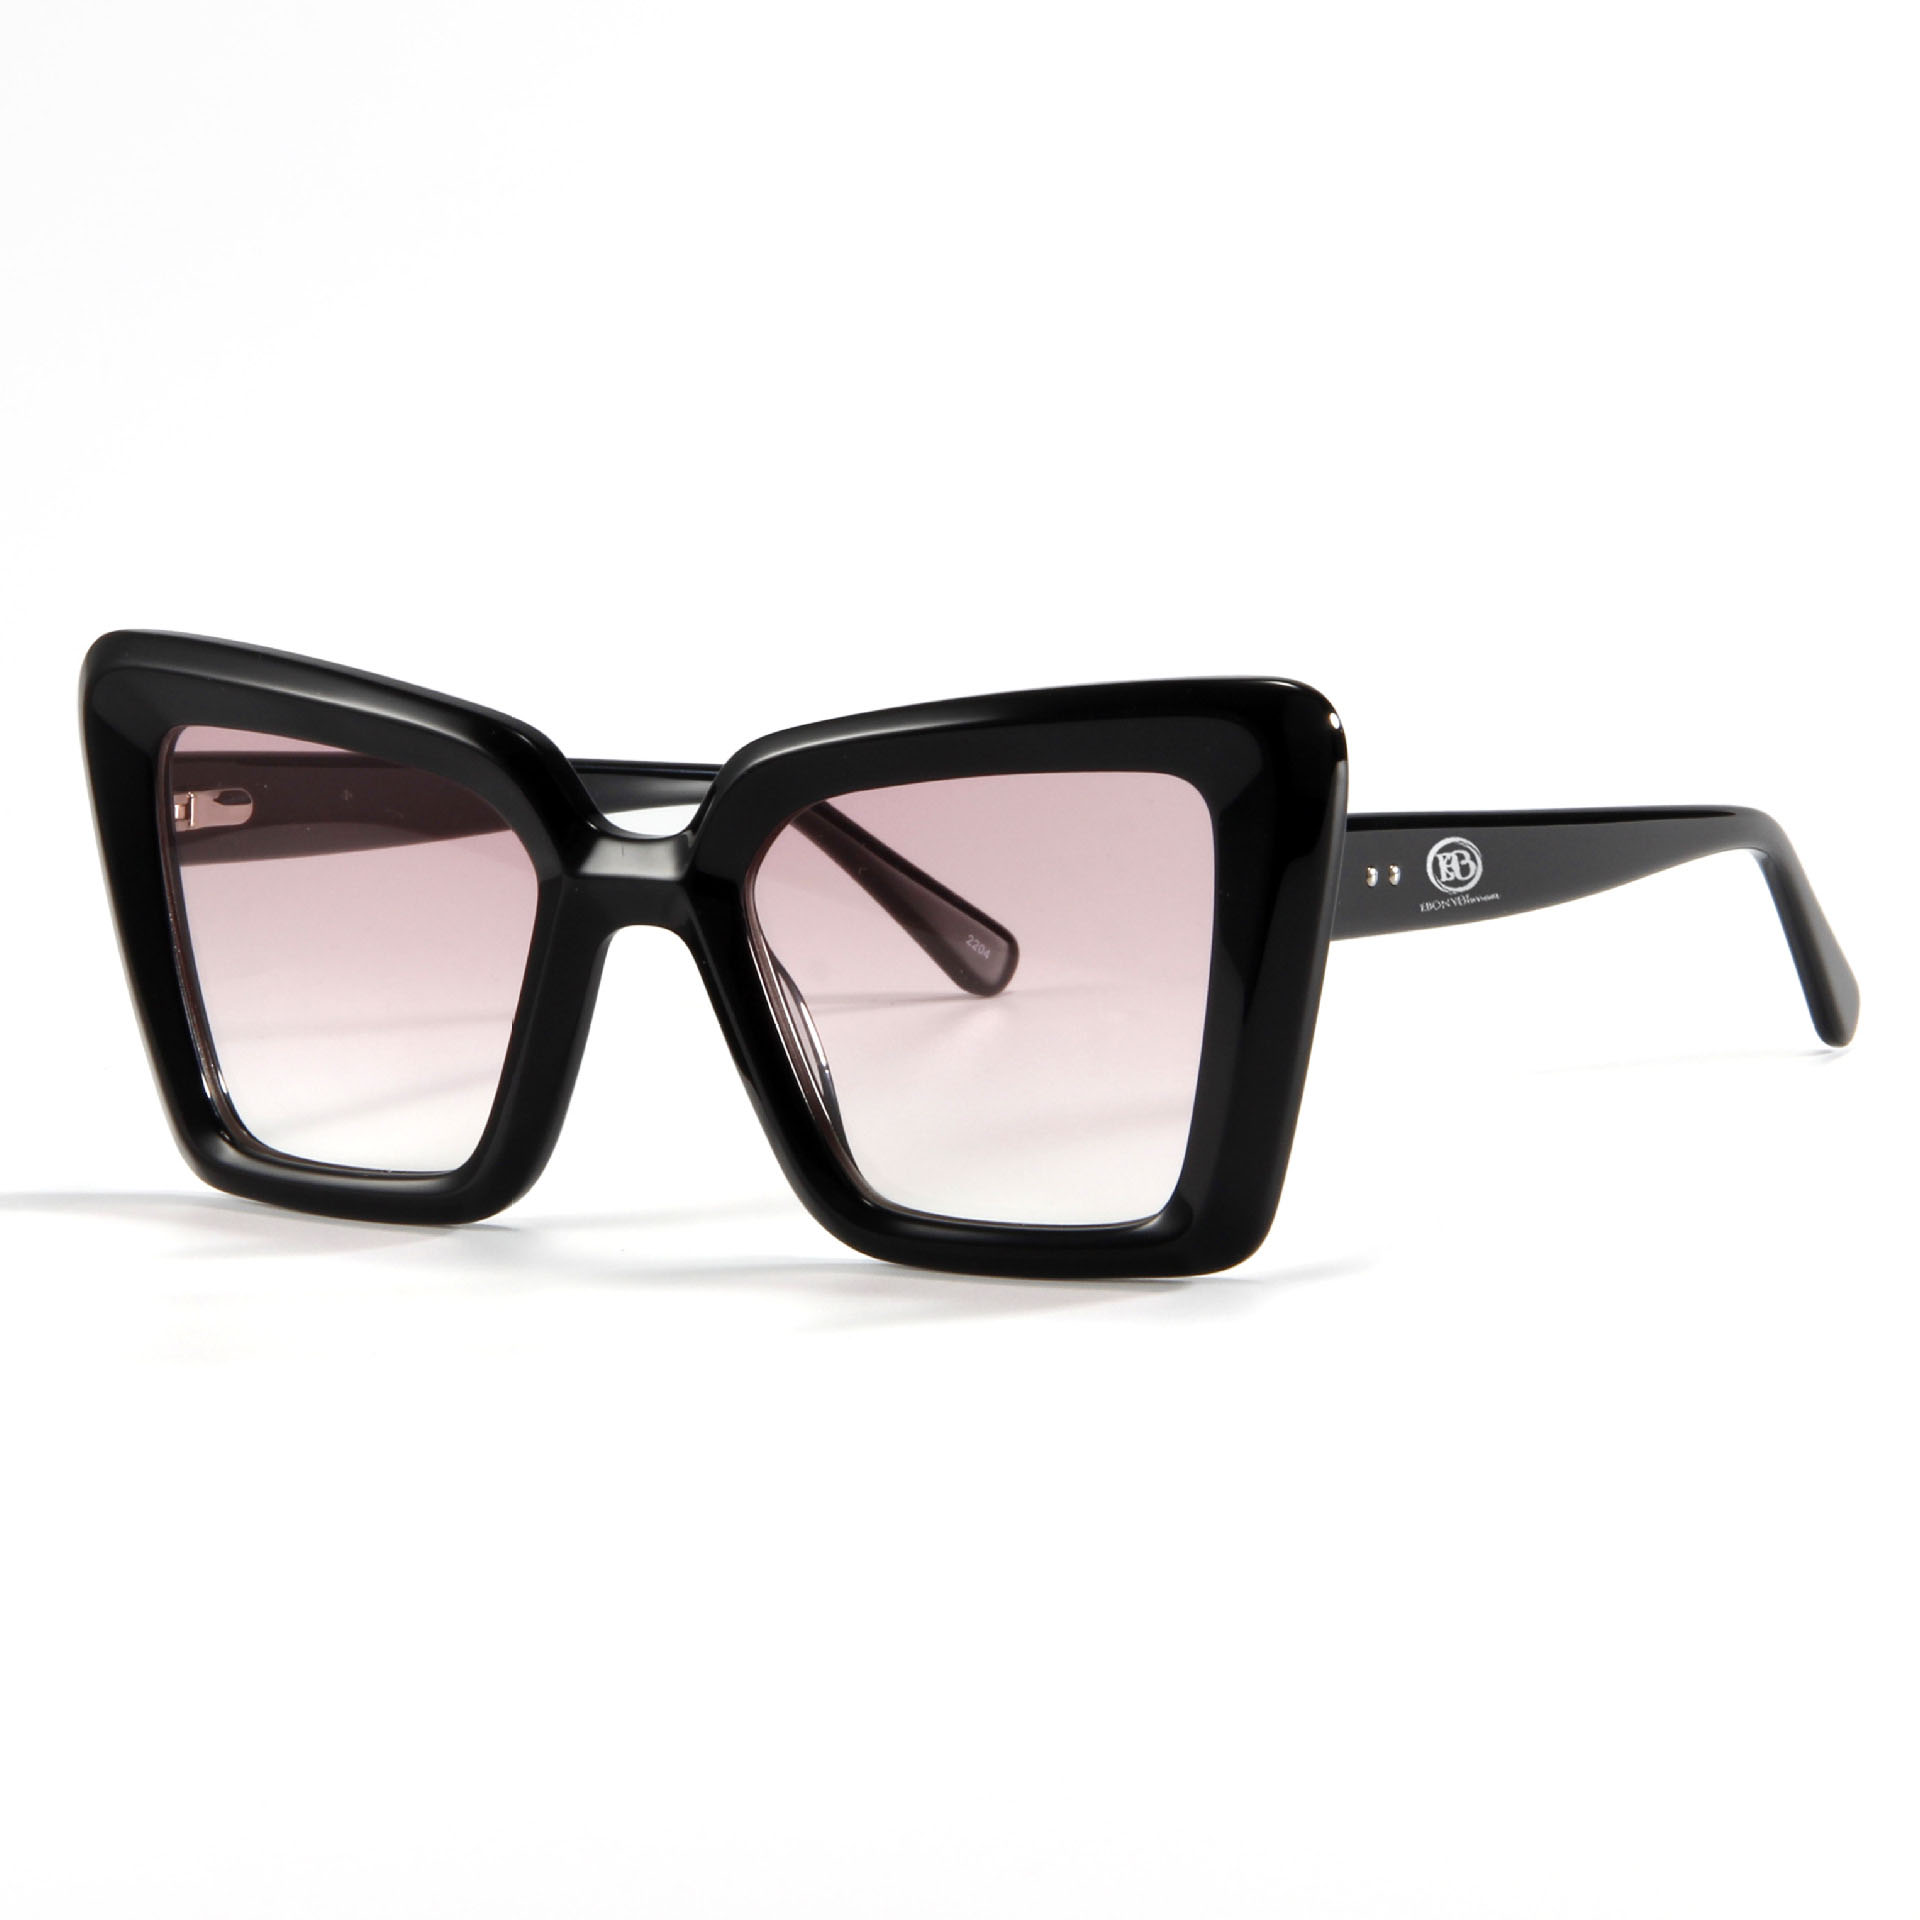 Luxe Noir Bloom Sunglasses